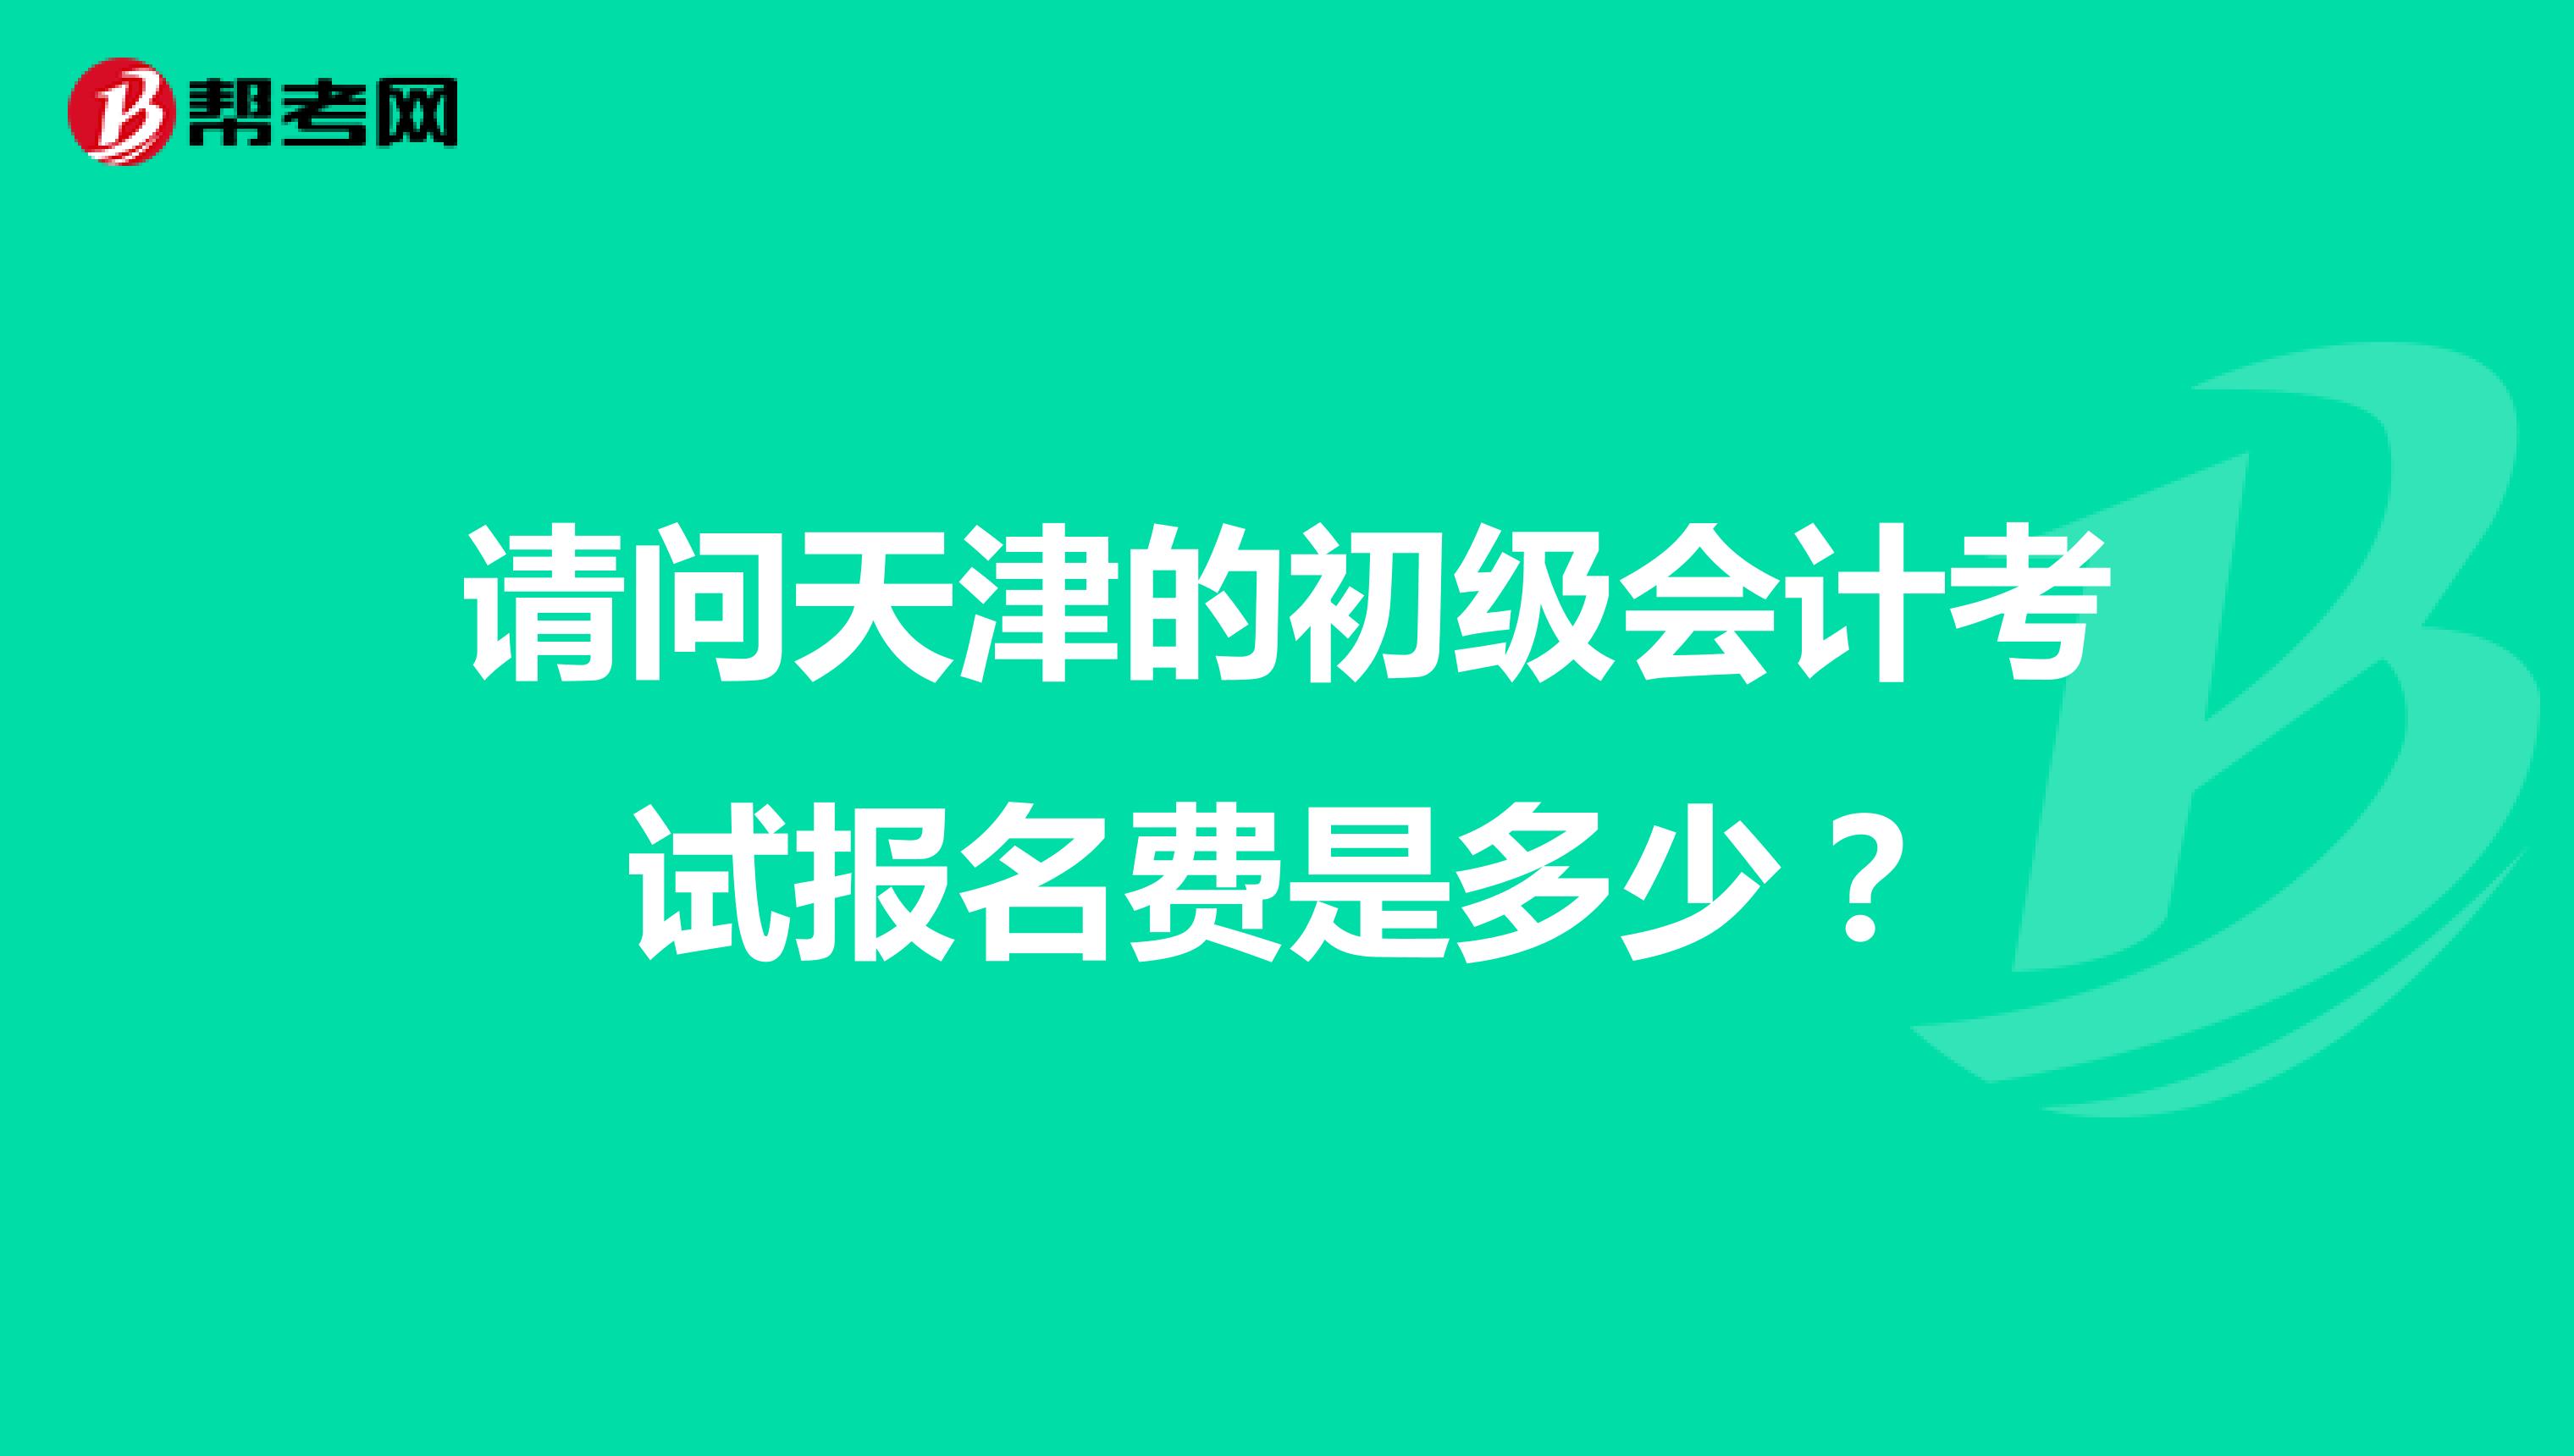 请问天津的初级会计考试报名费是多少？